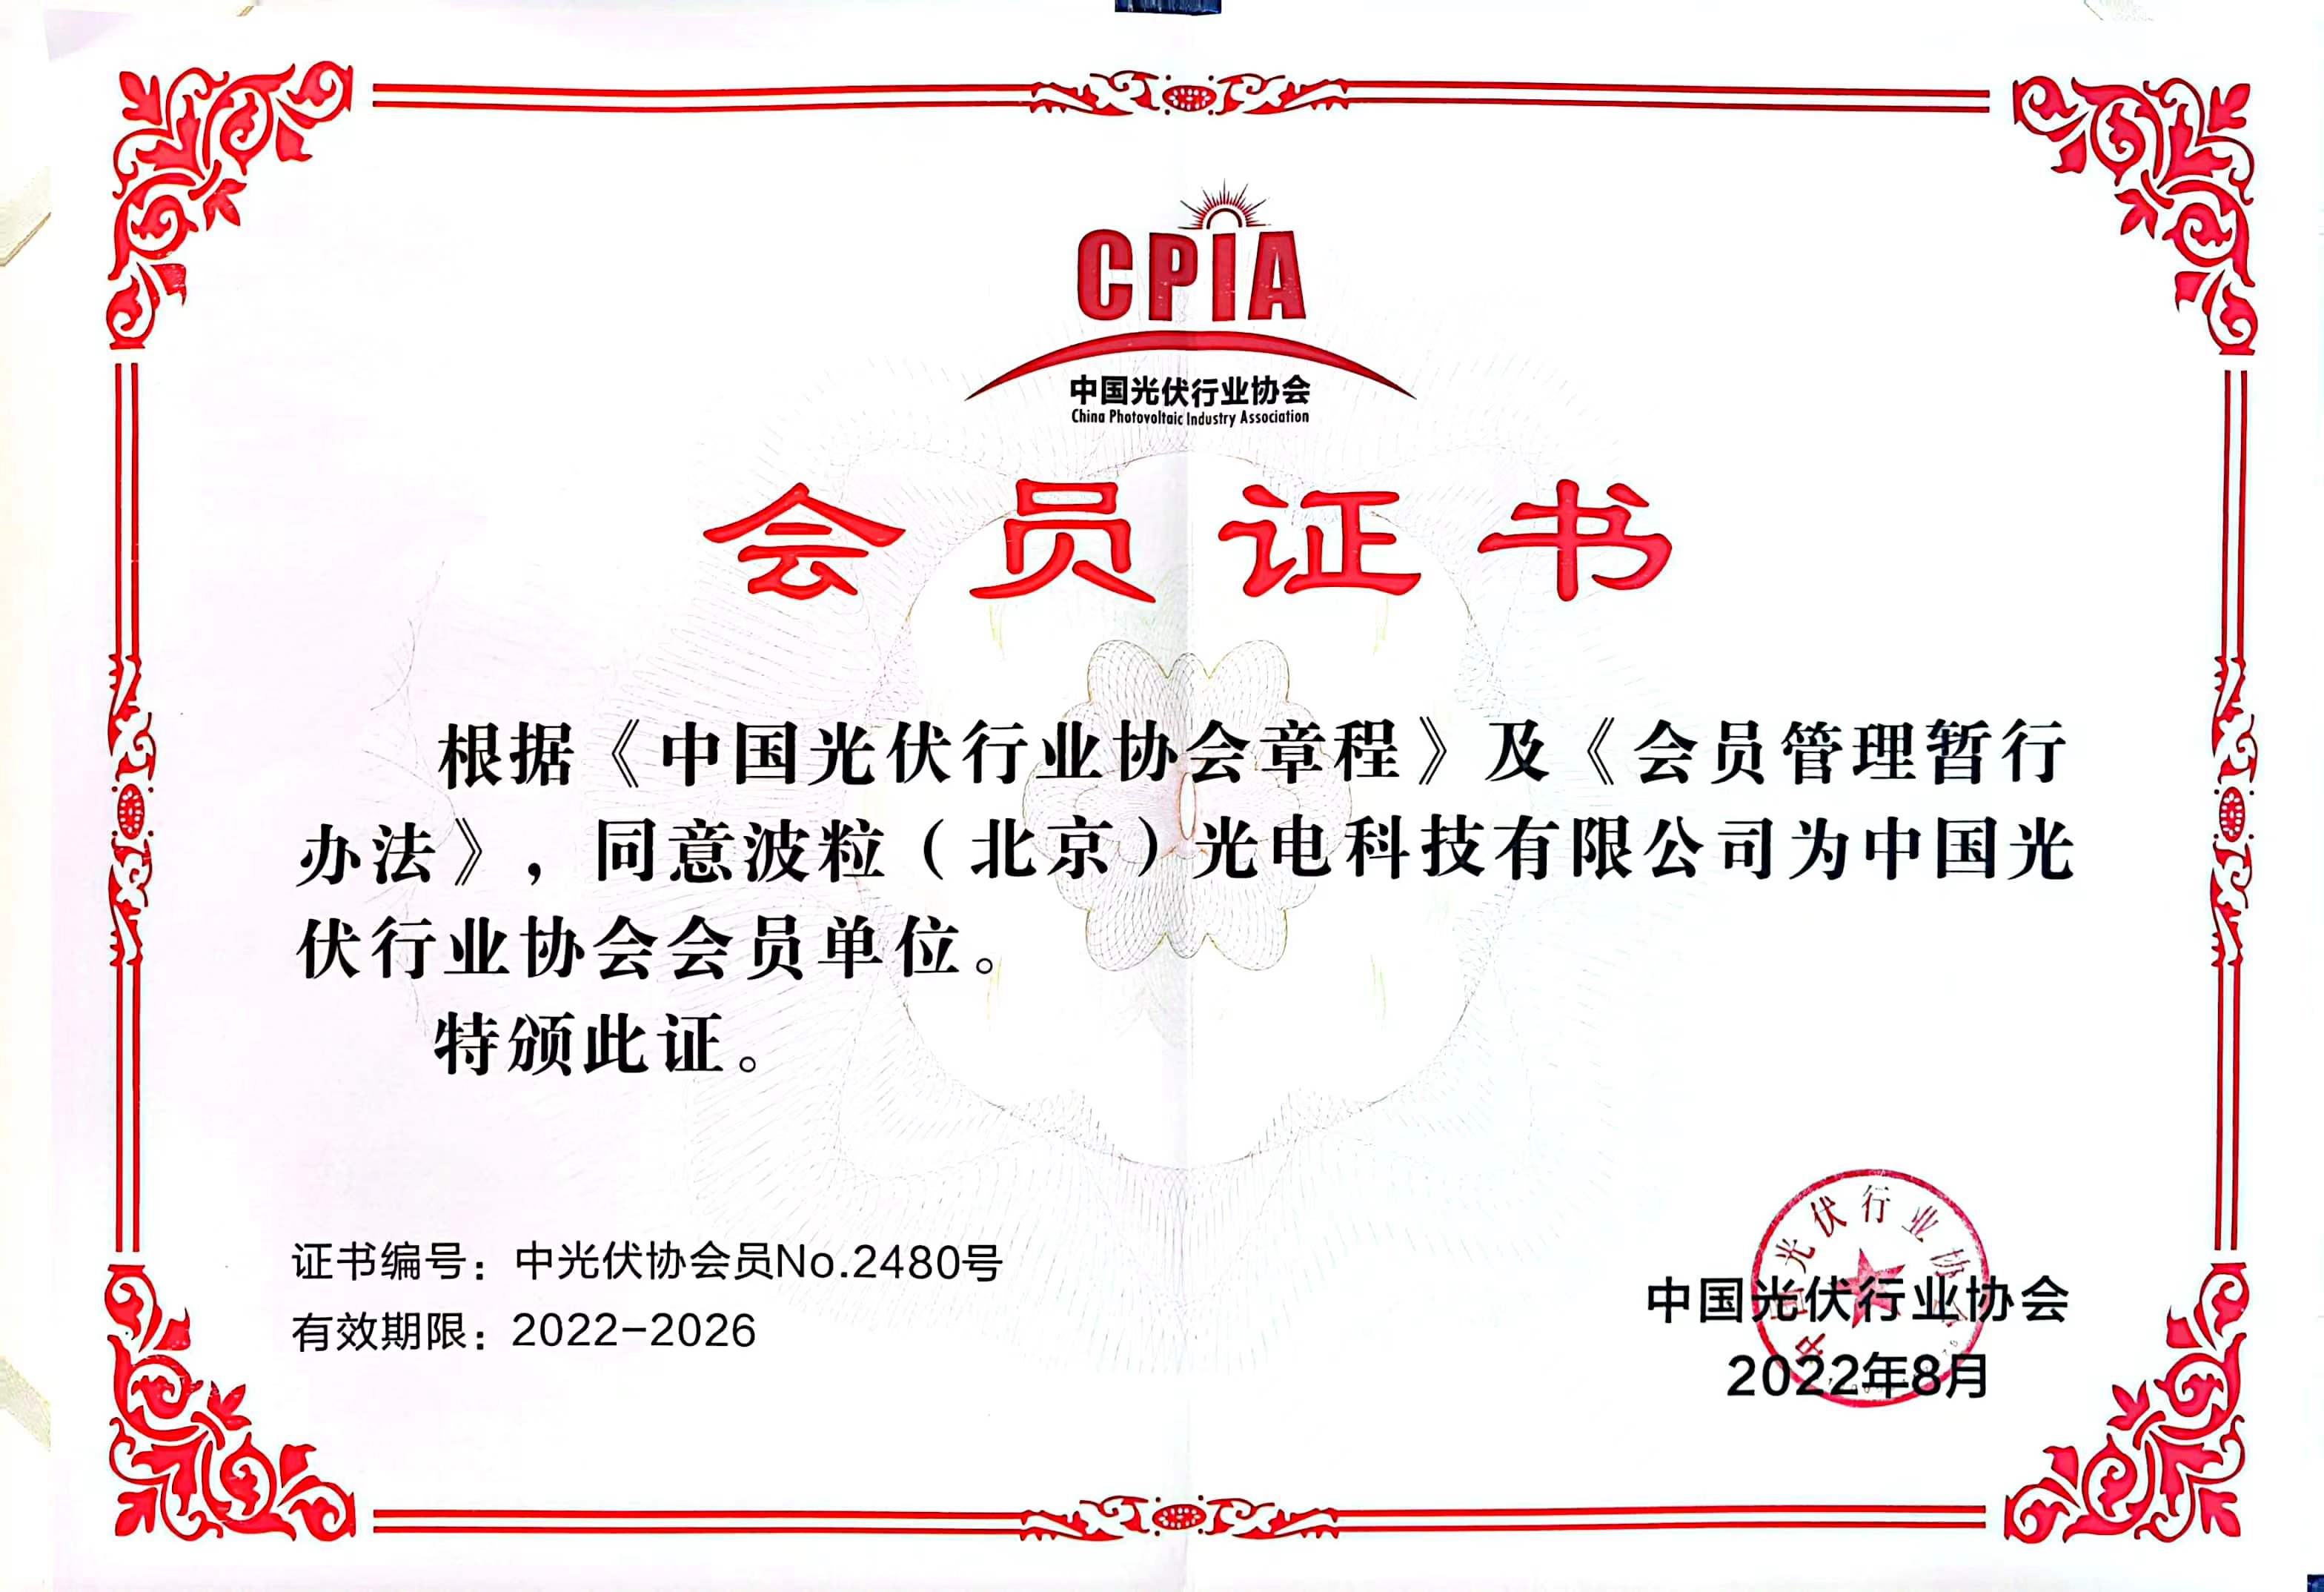 中国光伏行业协会会员单位